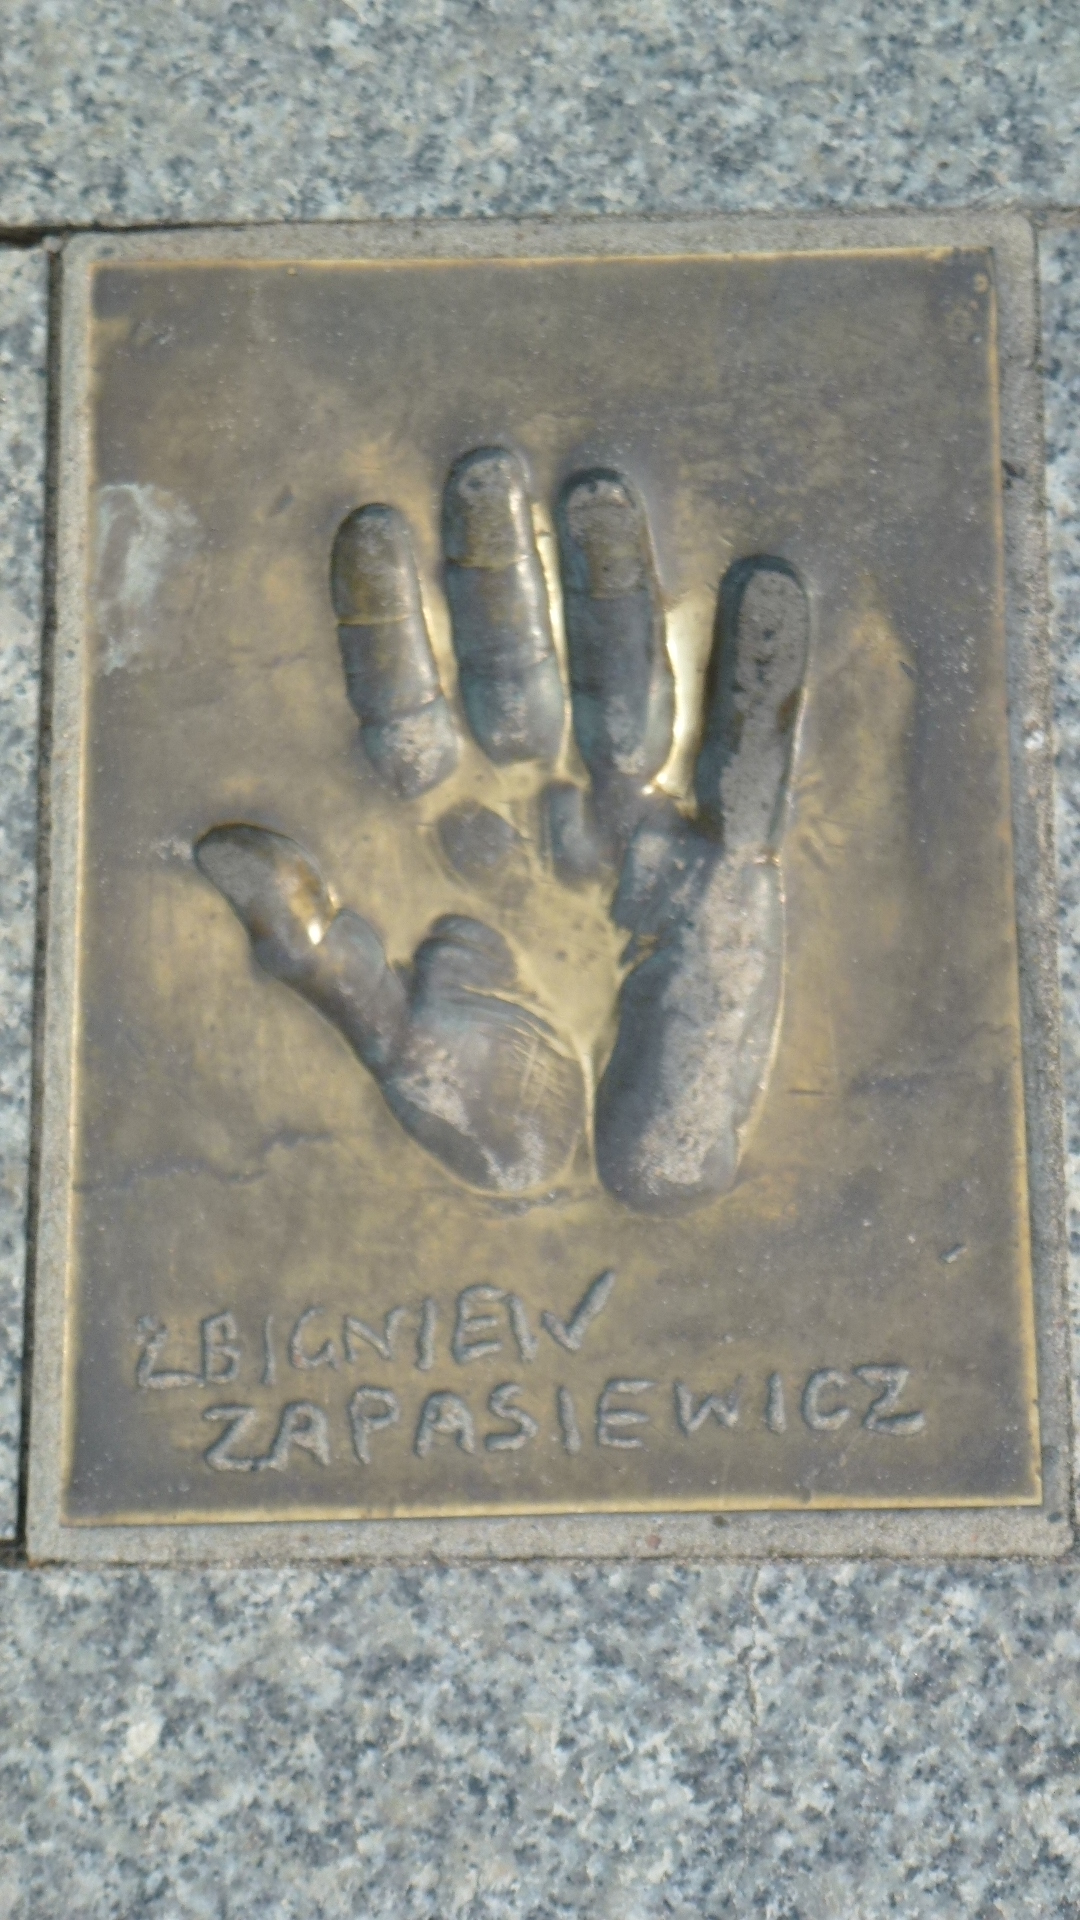 Wikipedia, Aleja Gwiazd in Midzyzdroje, Self-published work, Zbigniew Zapasiewicz